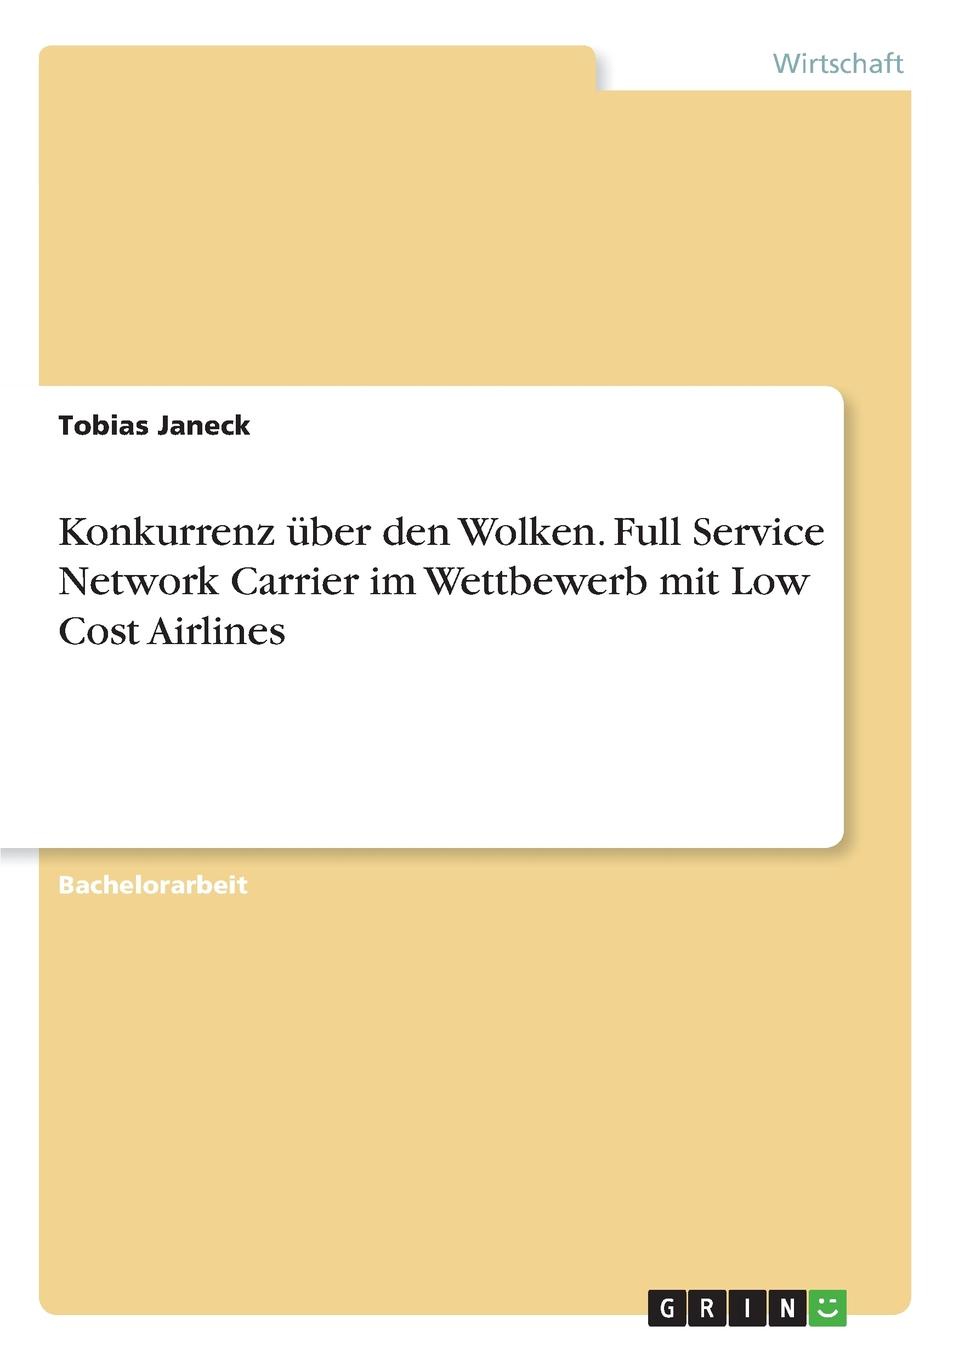 Konkurrenz uber den Wolken. Full Service Network Carrier im Wettbewerb mit Low Cost Airlines